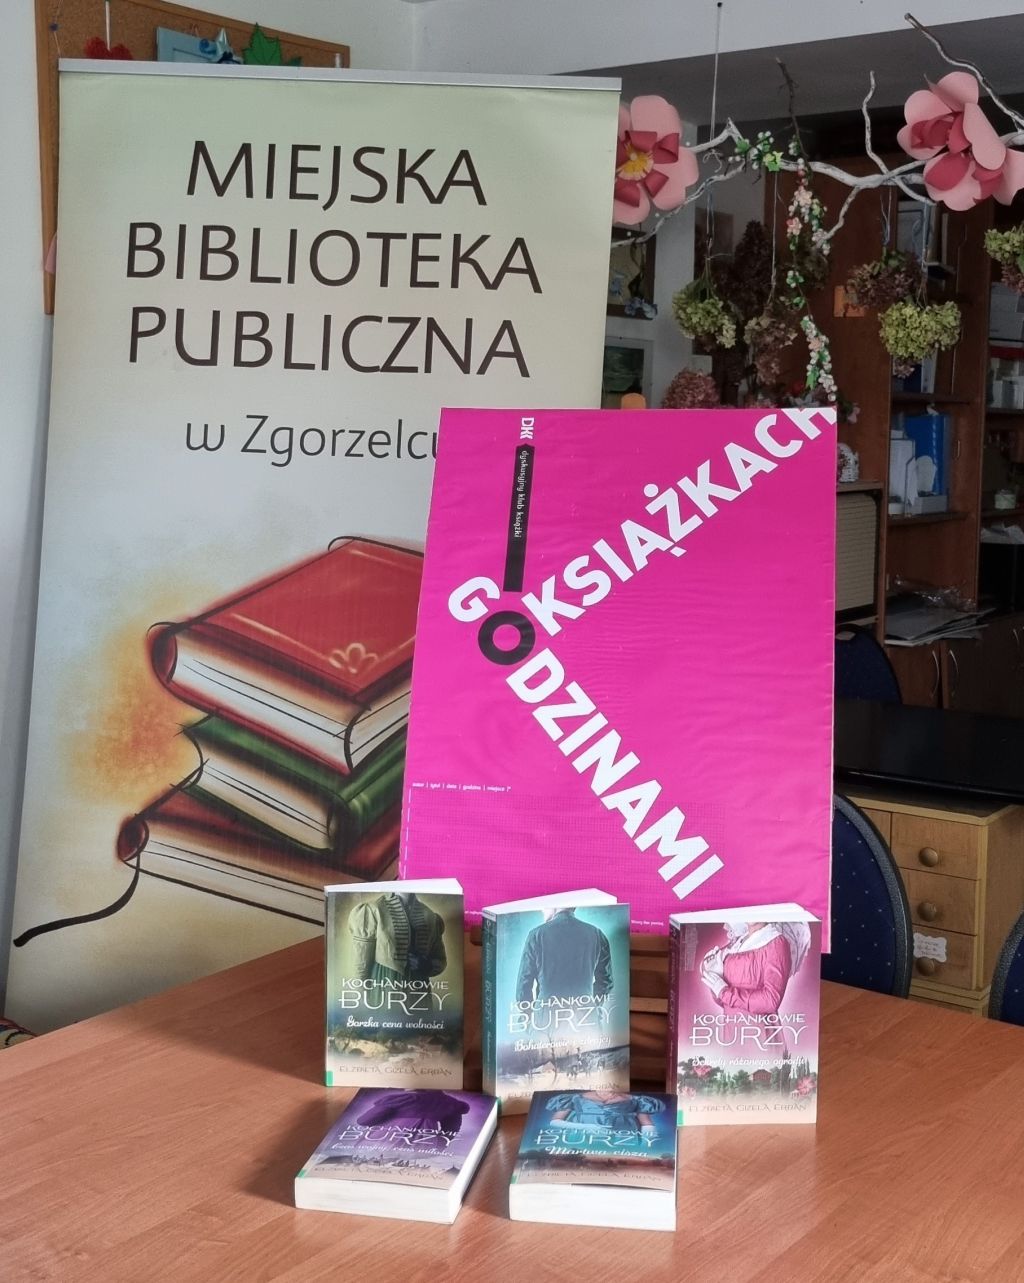 Wystawa książek pt. " Kochankowie Burzy" na spotkaniu Dyskusyjnego Klubu Książki. Zdjęcie jest odnośnikiem do wpisu >„Kochankowie Burzy”.